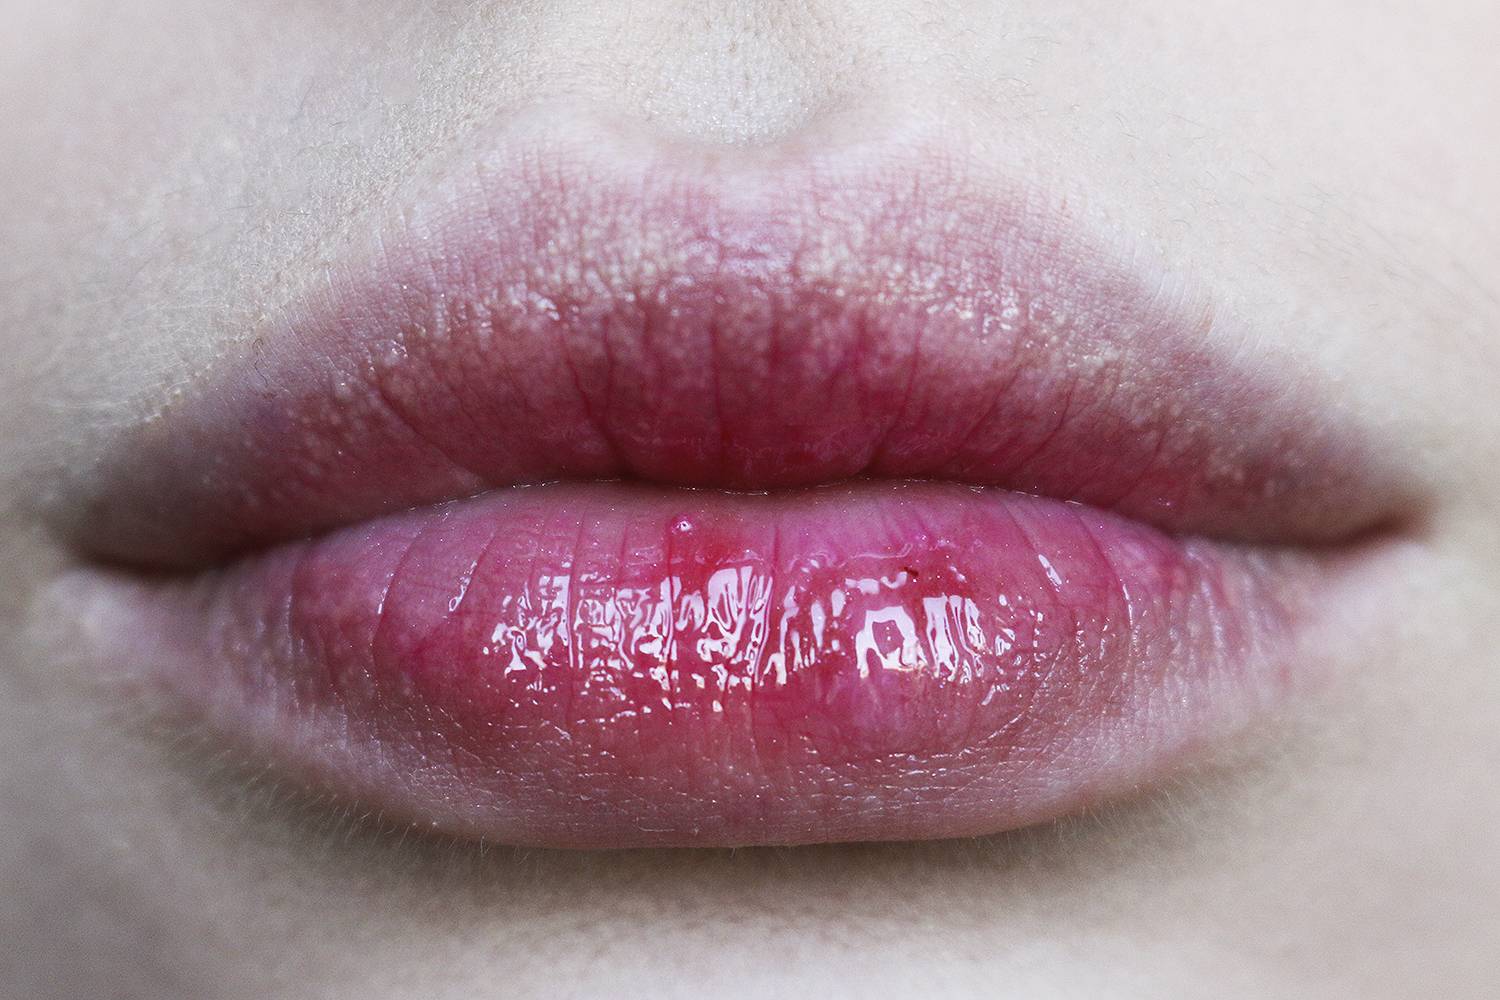 Техника татуажа lip kiss: эффект зацелованных губ  | pro.bhub.com.ua